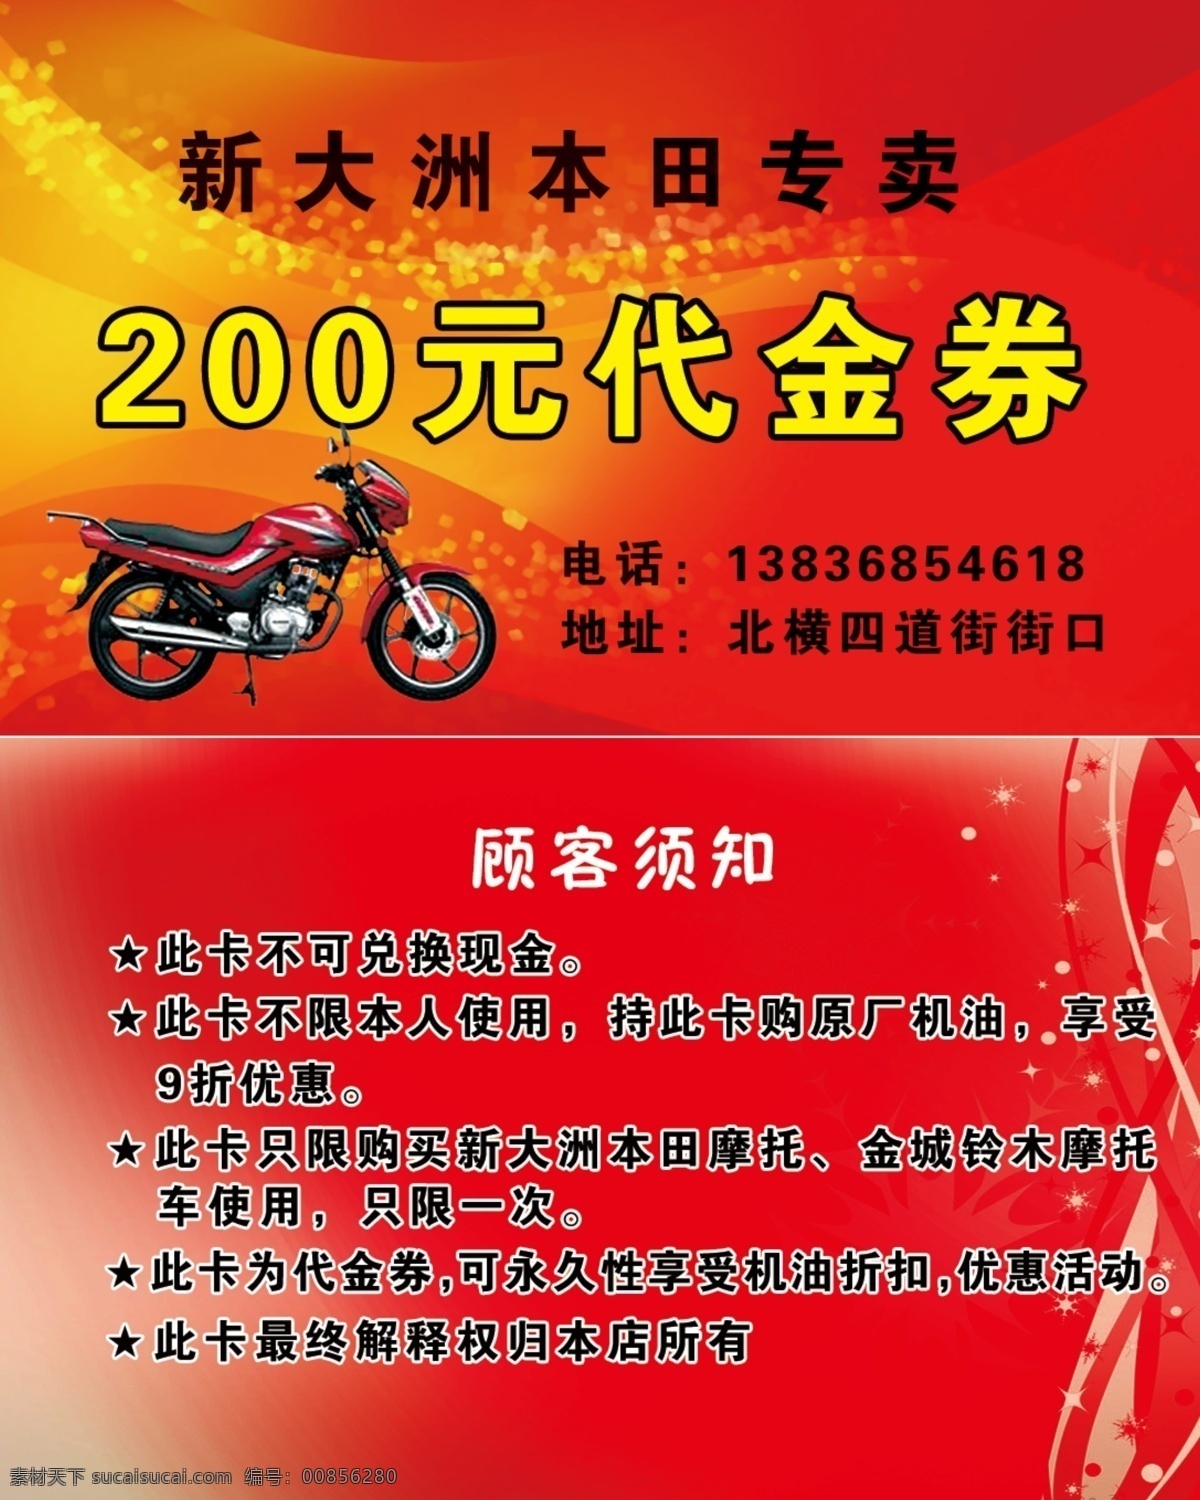 新大洲 本田 专卖 代金券 摩托车 红色 黄色星星 名片卡片 广告设计模板 源文件